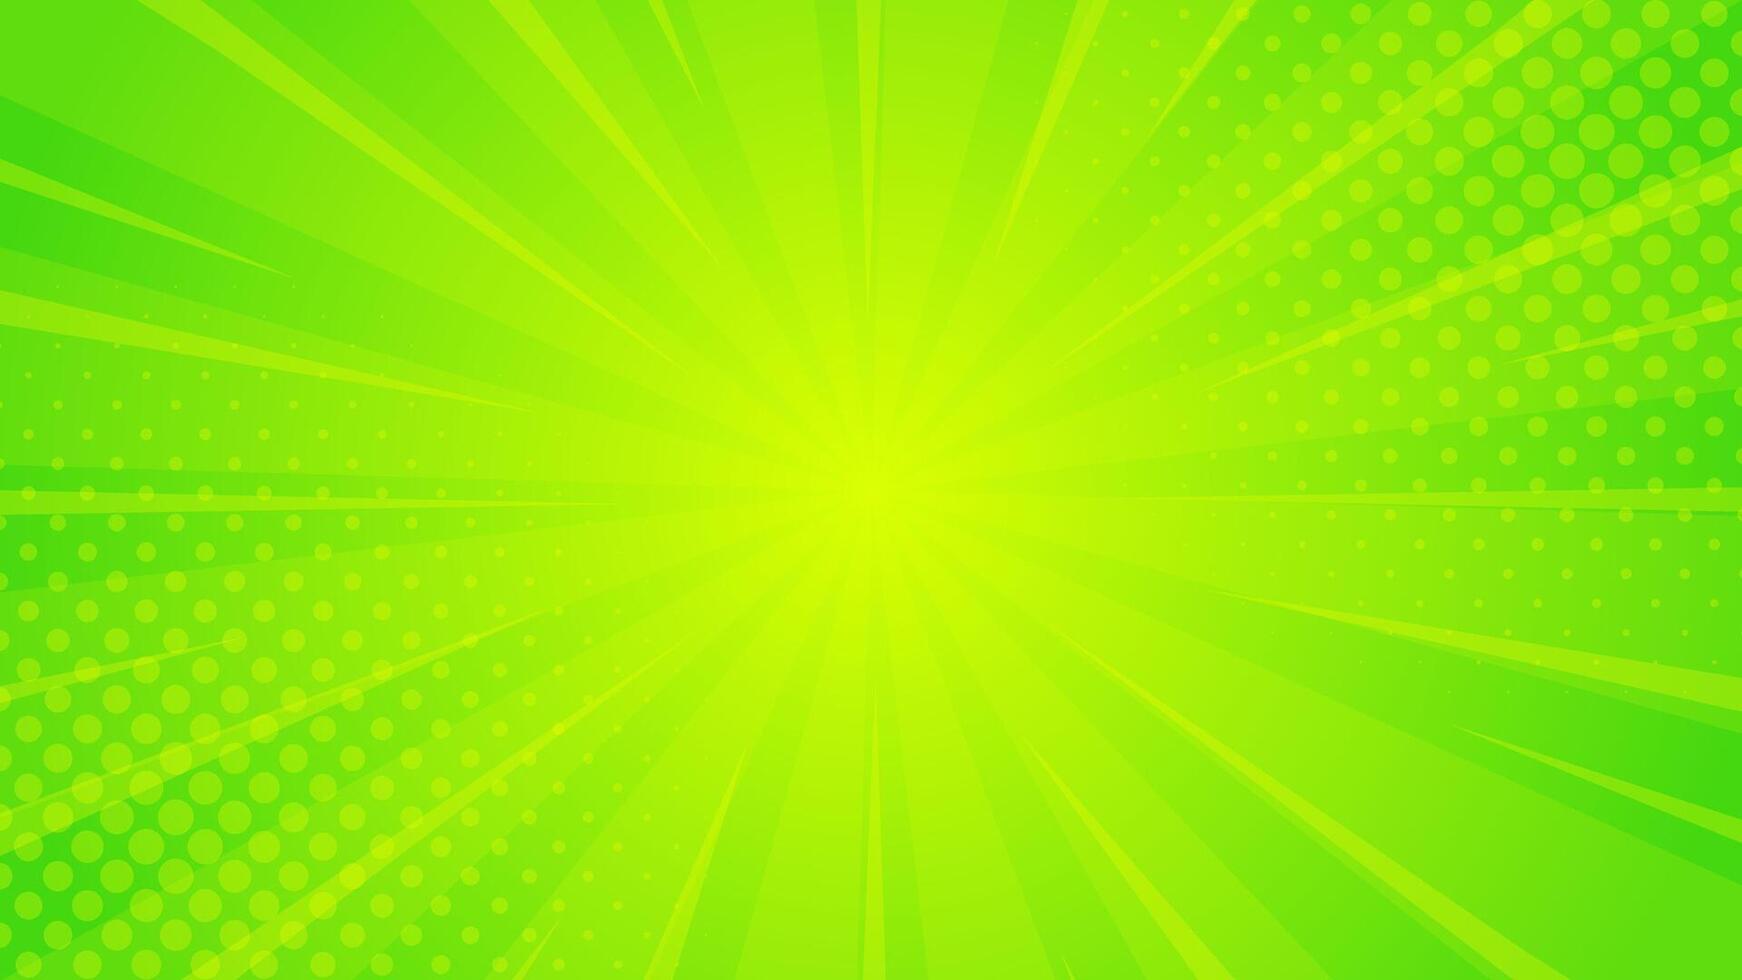 helder groen Geel helling abstract achtergrond. groen grappig zonnestraal effect achtergrond met halftoon. geschikt voor Sjablonen, verkoop spandoeken, evenementen, advertenties, web, en Pagina's vector